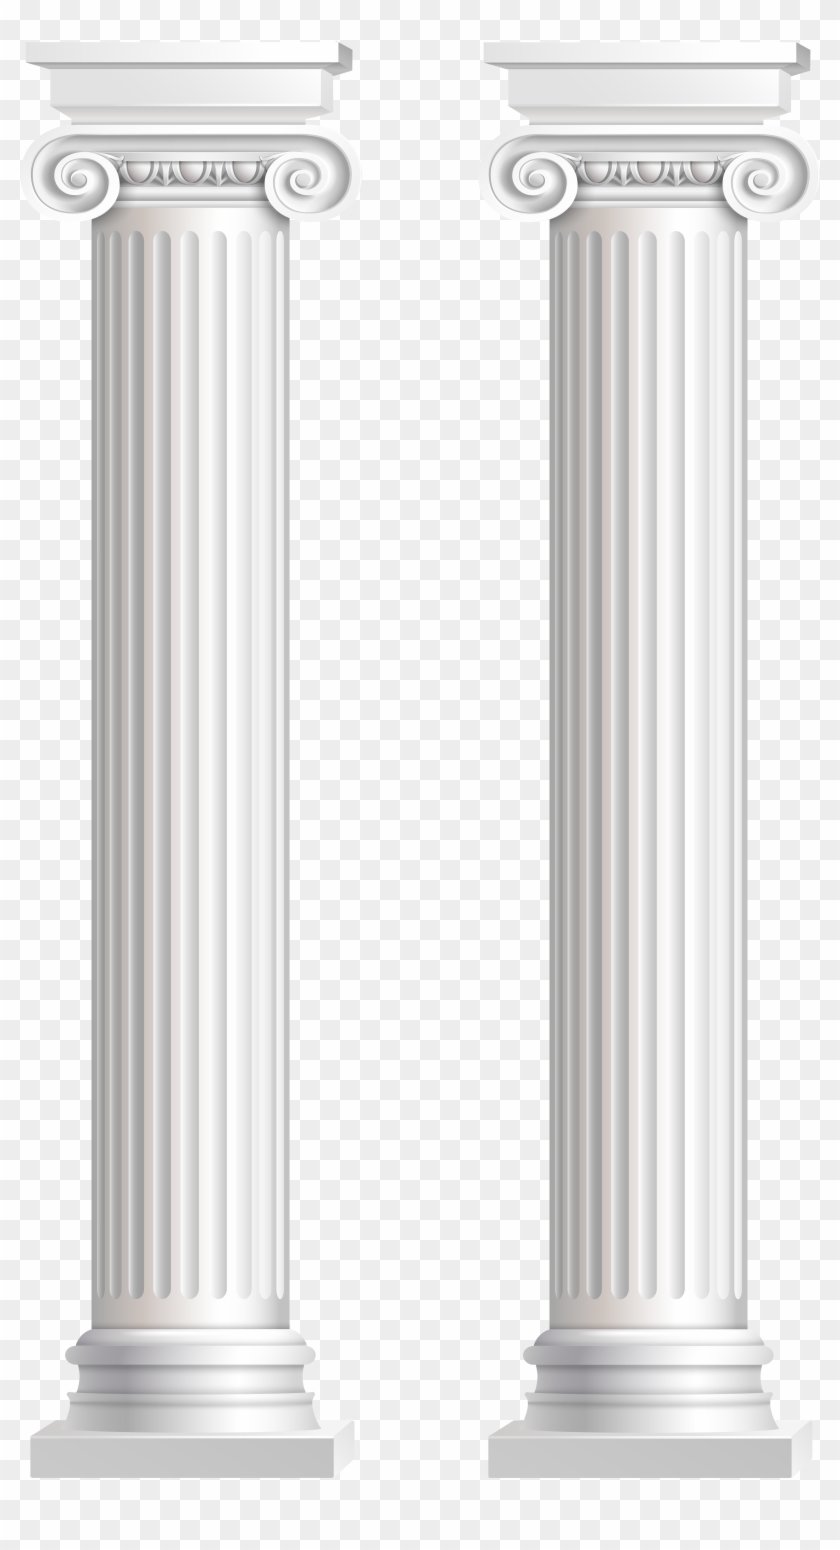 Pillars Transparent Png Clip Art Image - Transparent Background Pillars Transparent #240261